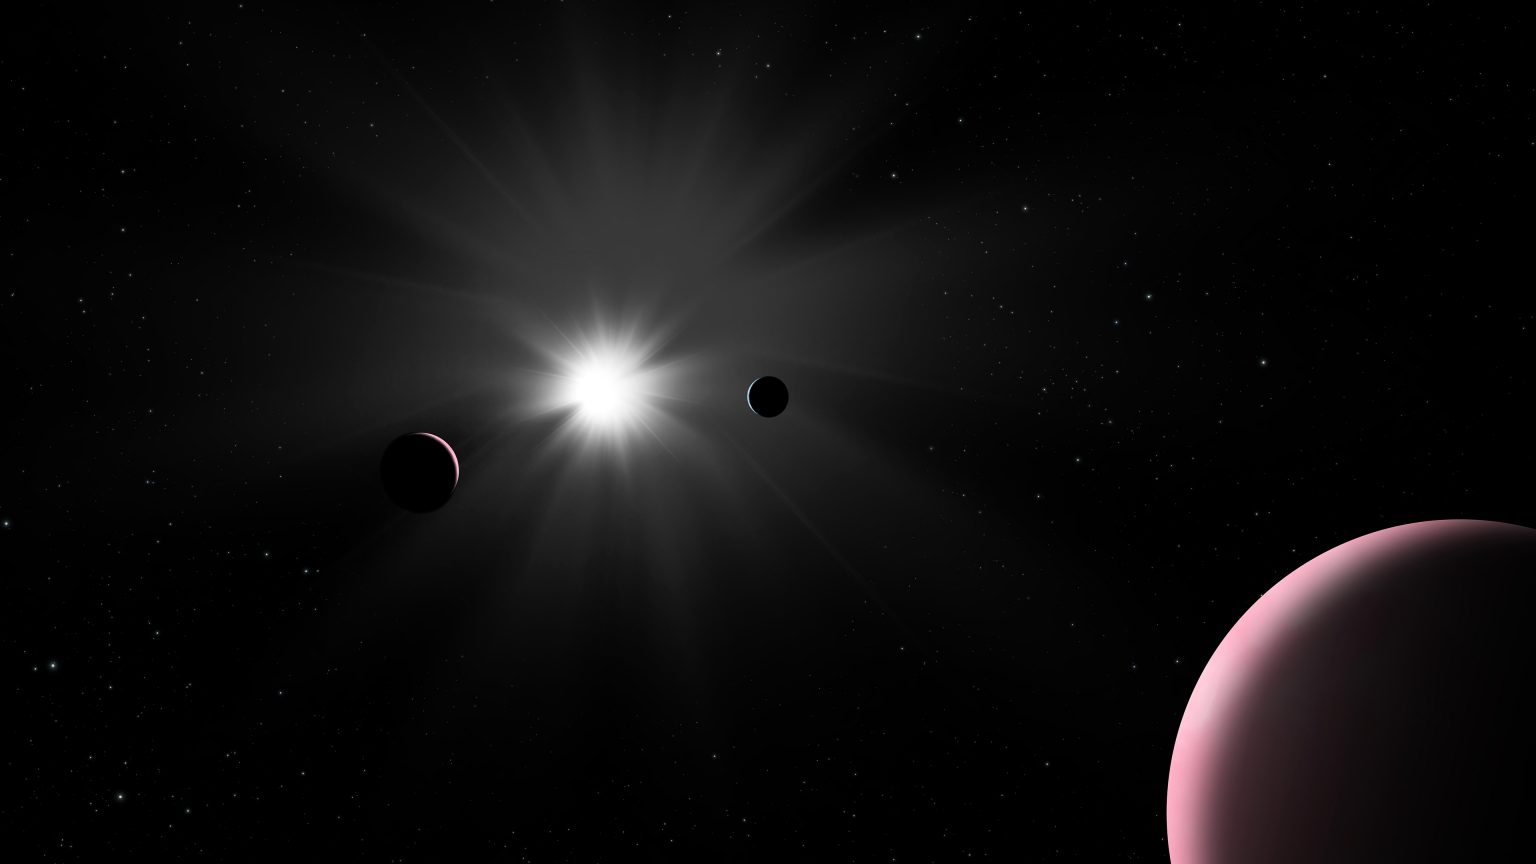 Nu2 Lupi d：科学家意外发现一颗公转周期超过100天的系外行星